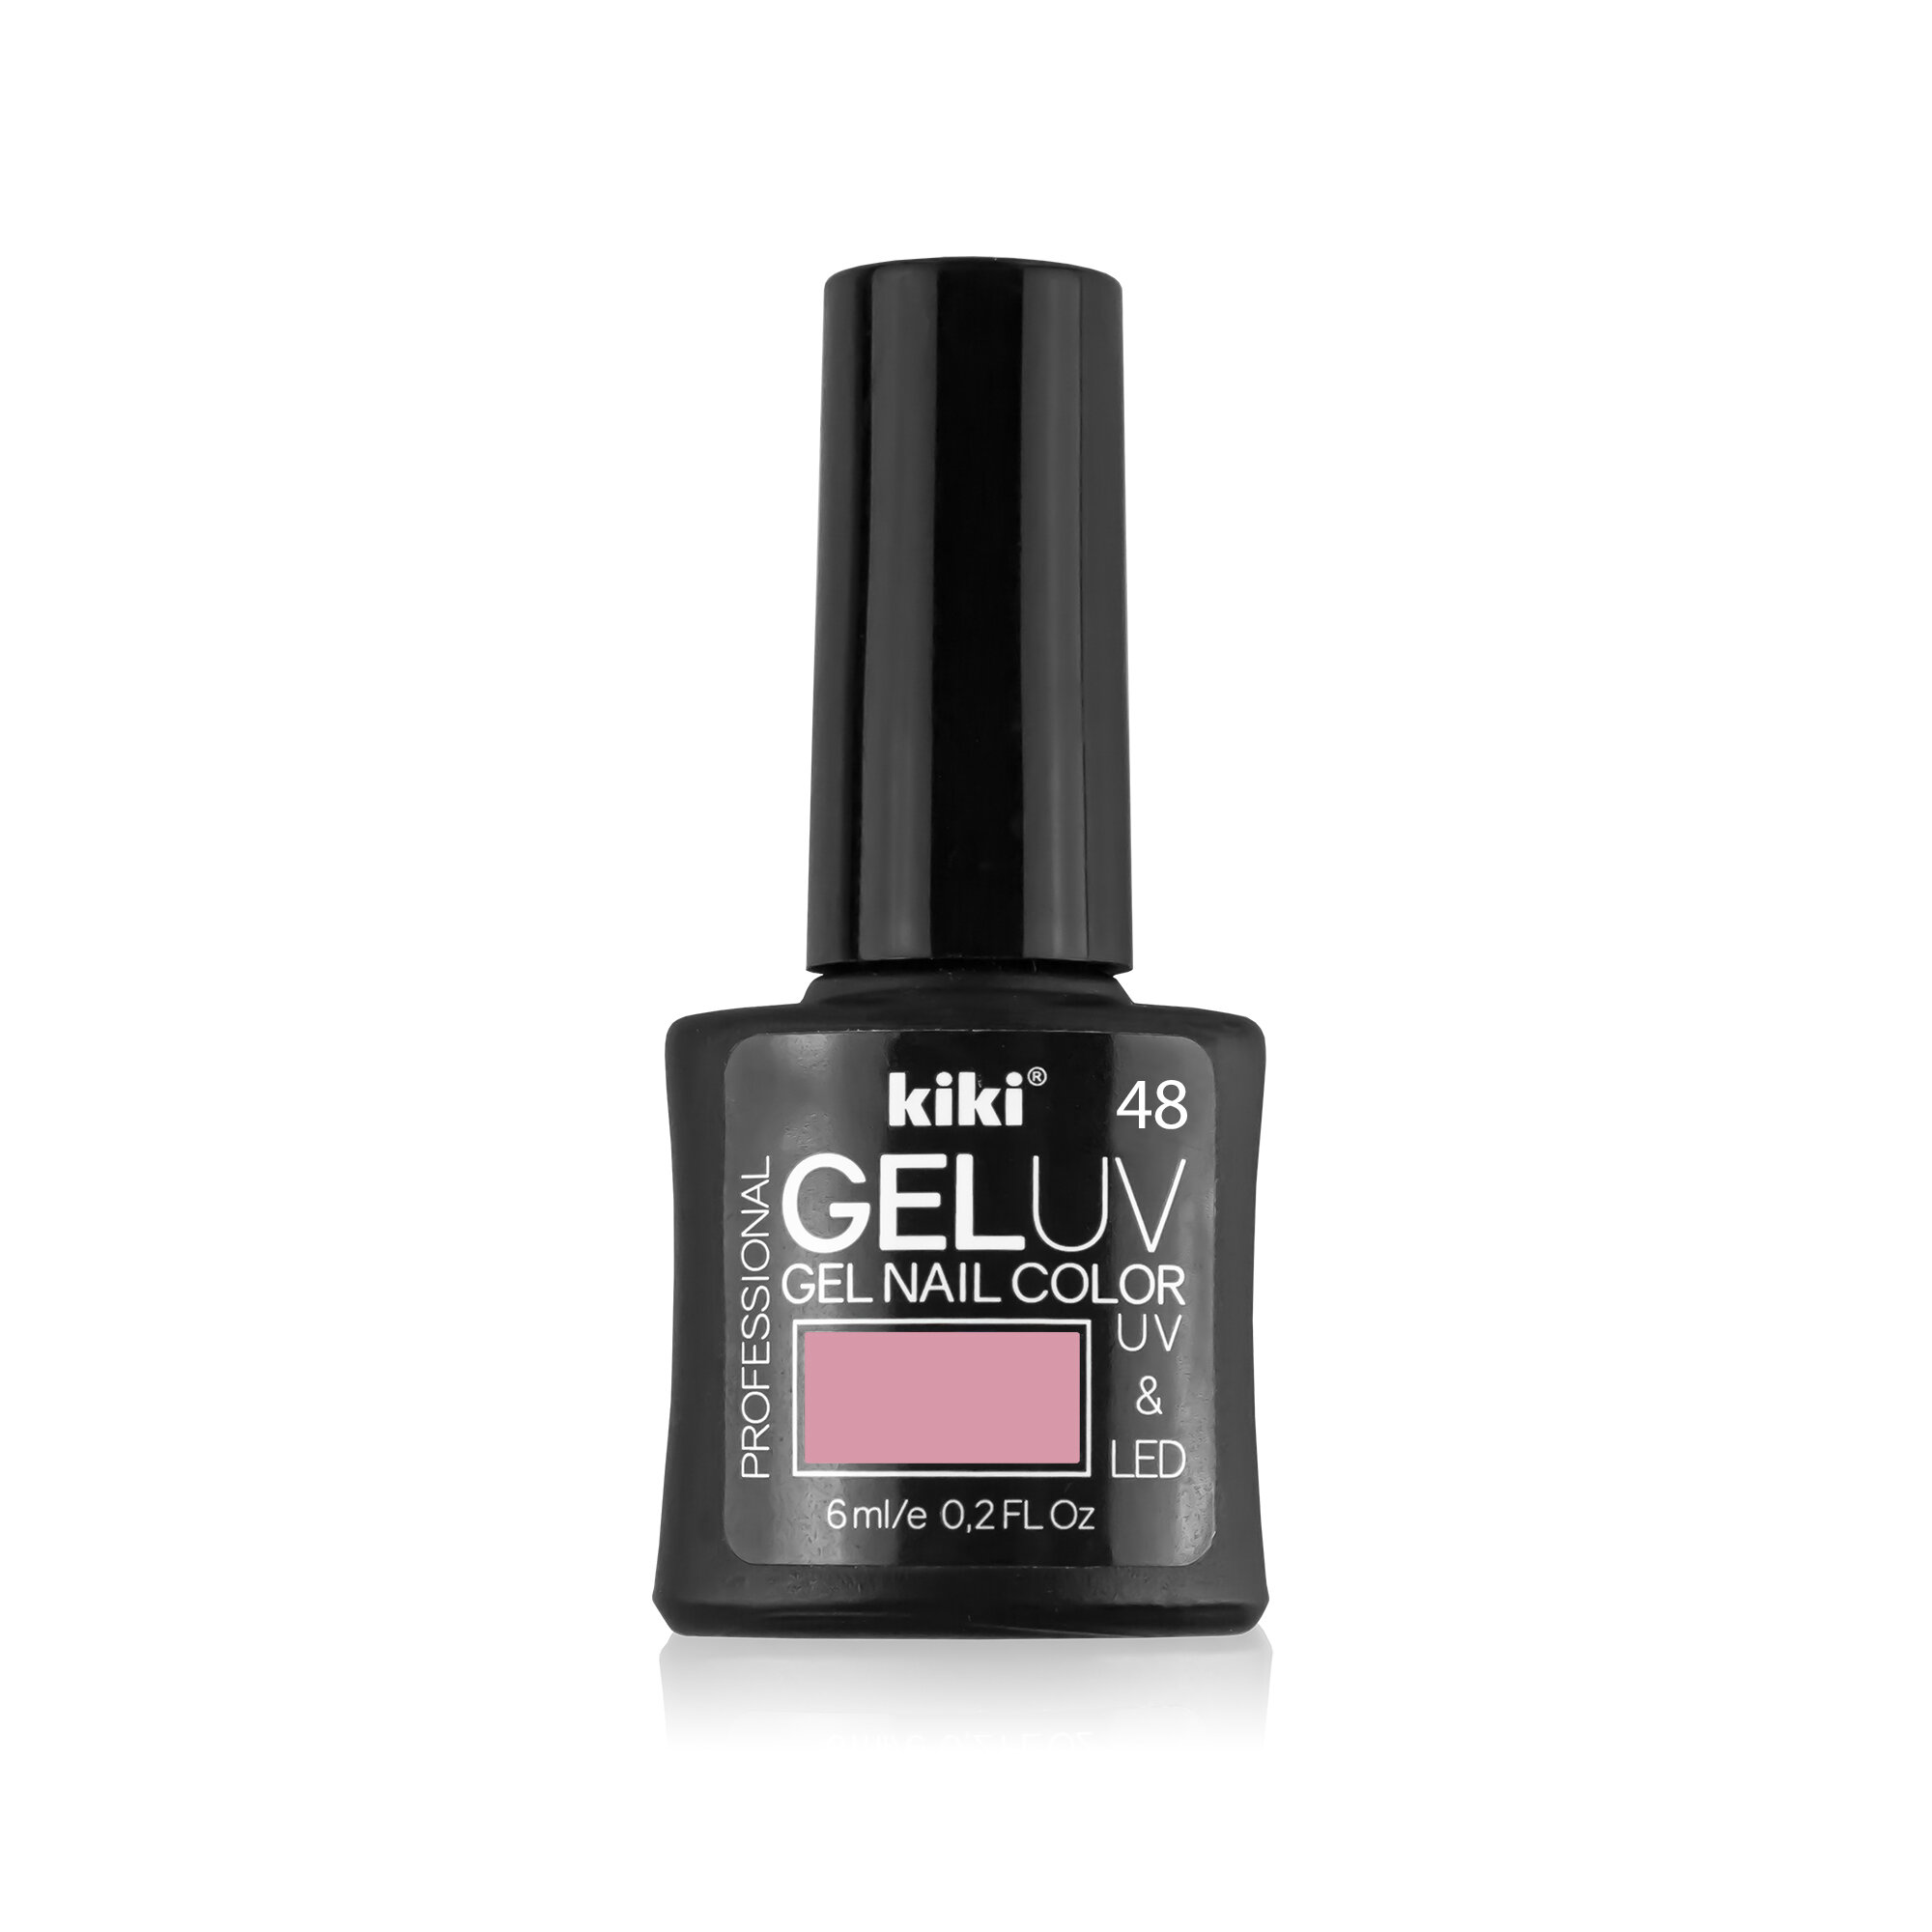 Гель-лак для ногтей KIKI оттенок 48 GEL UV&LED, телесно-розовый, 6 мл